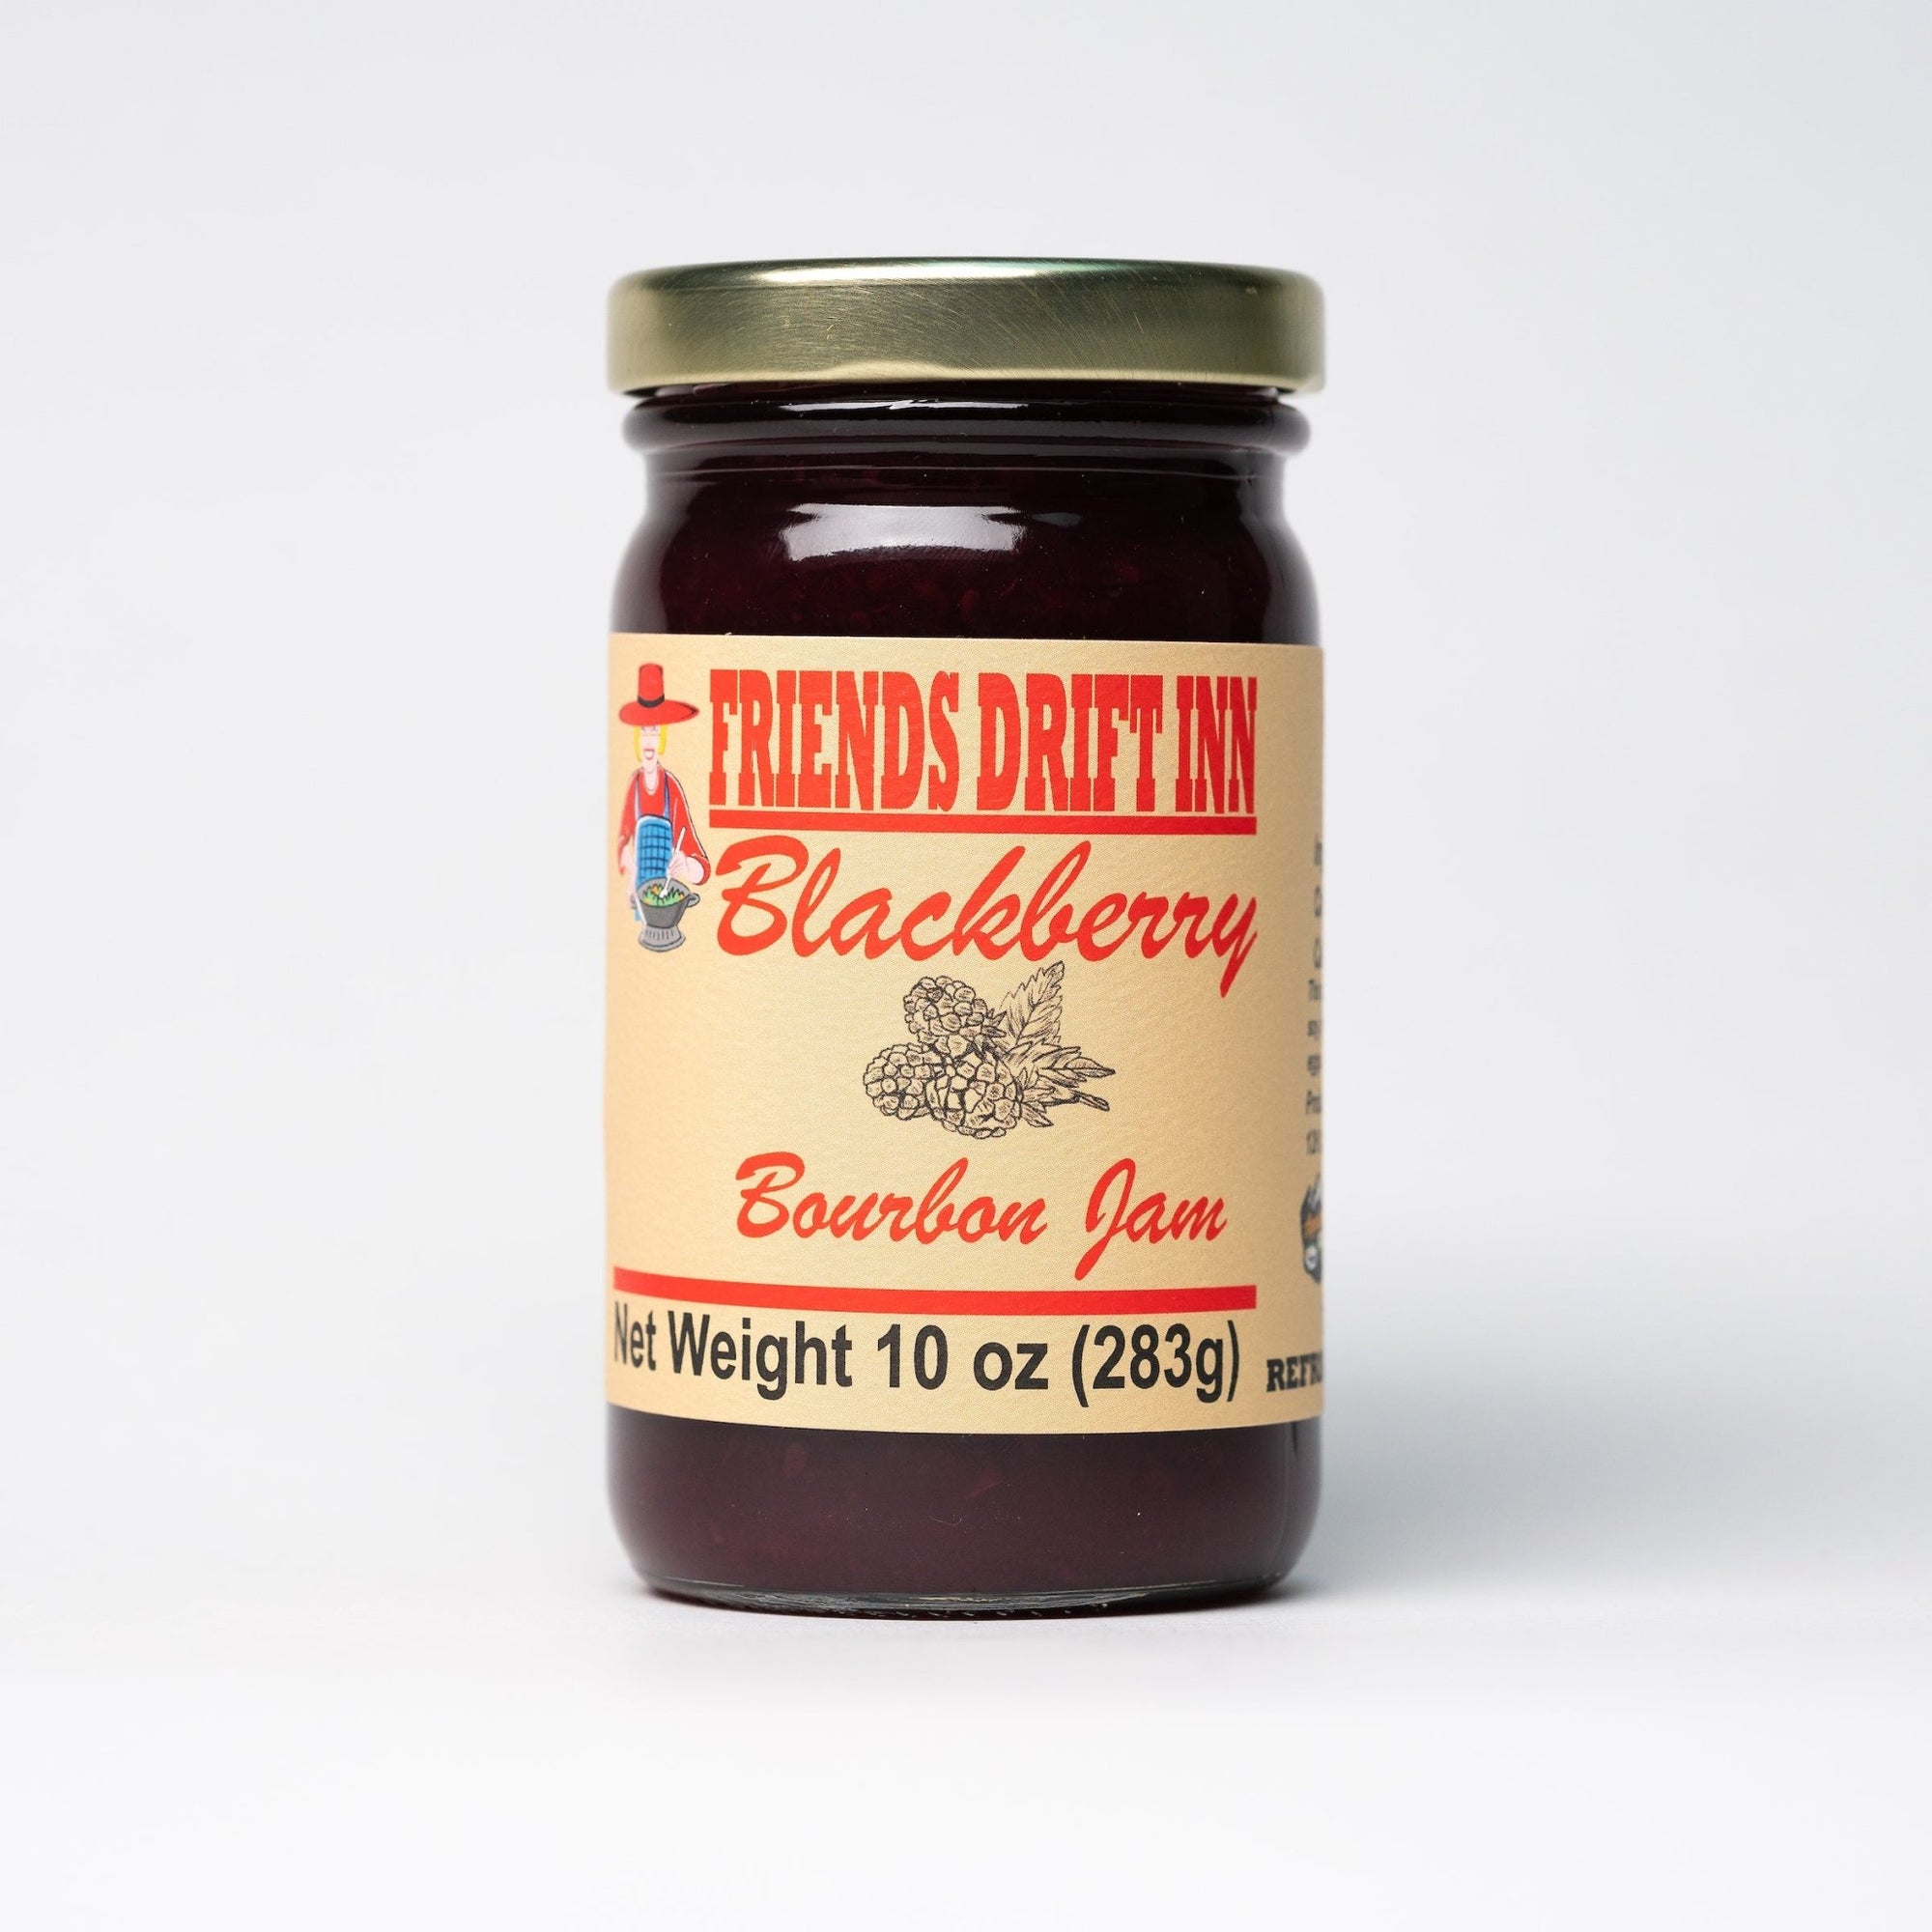 Friends Drift Inn Blackberry Bourbon Jam - Kentucky Soaps & Such